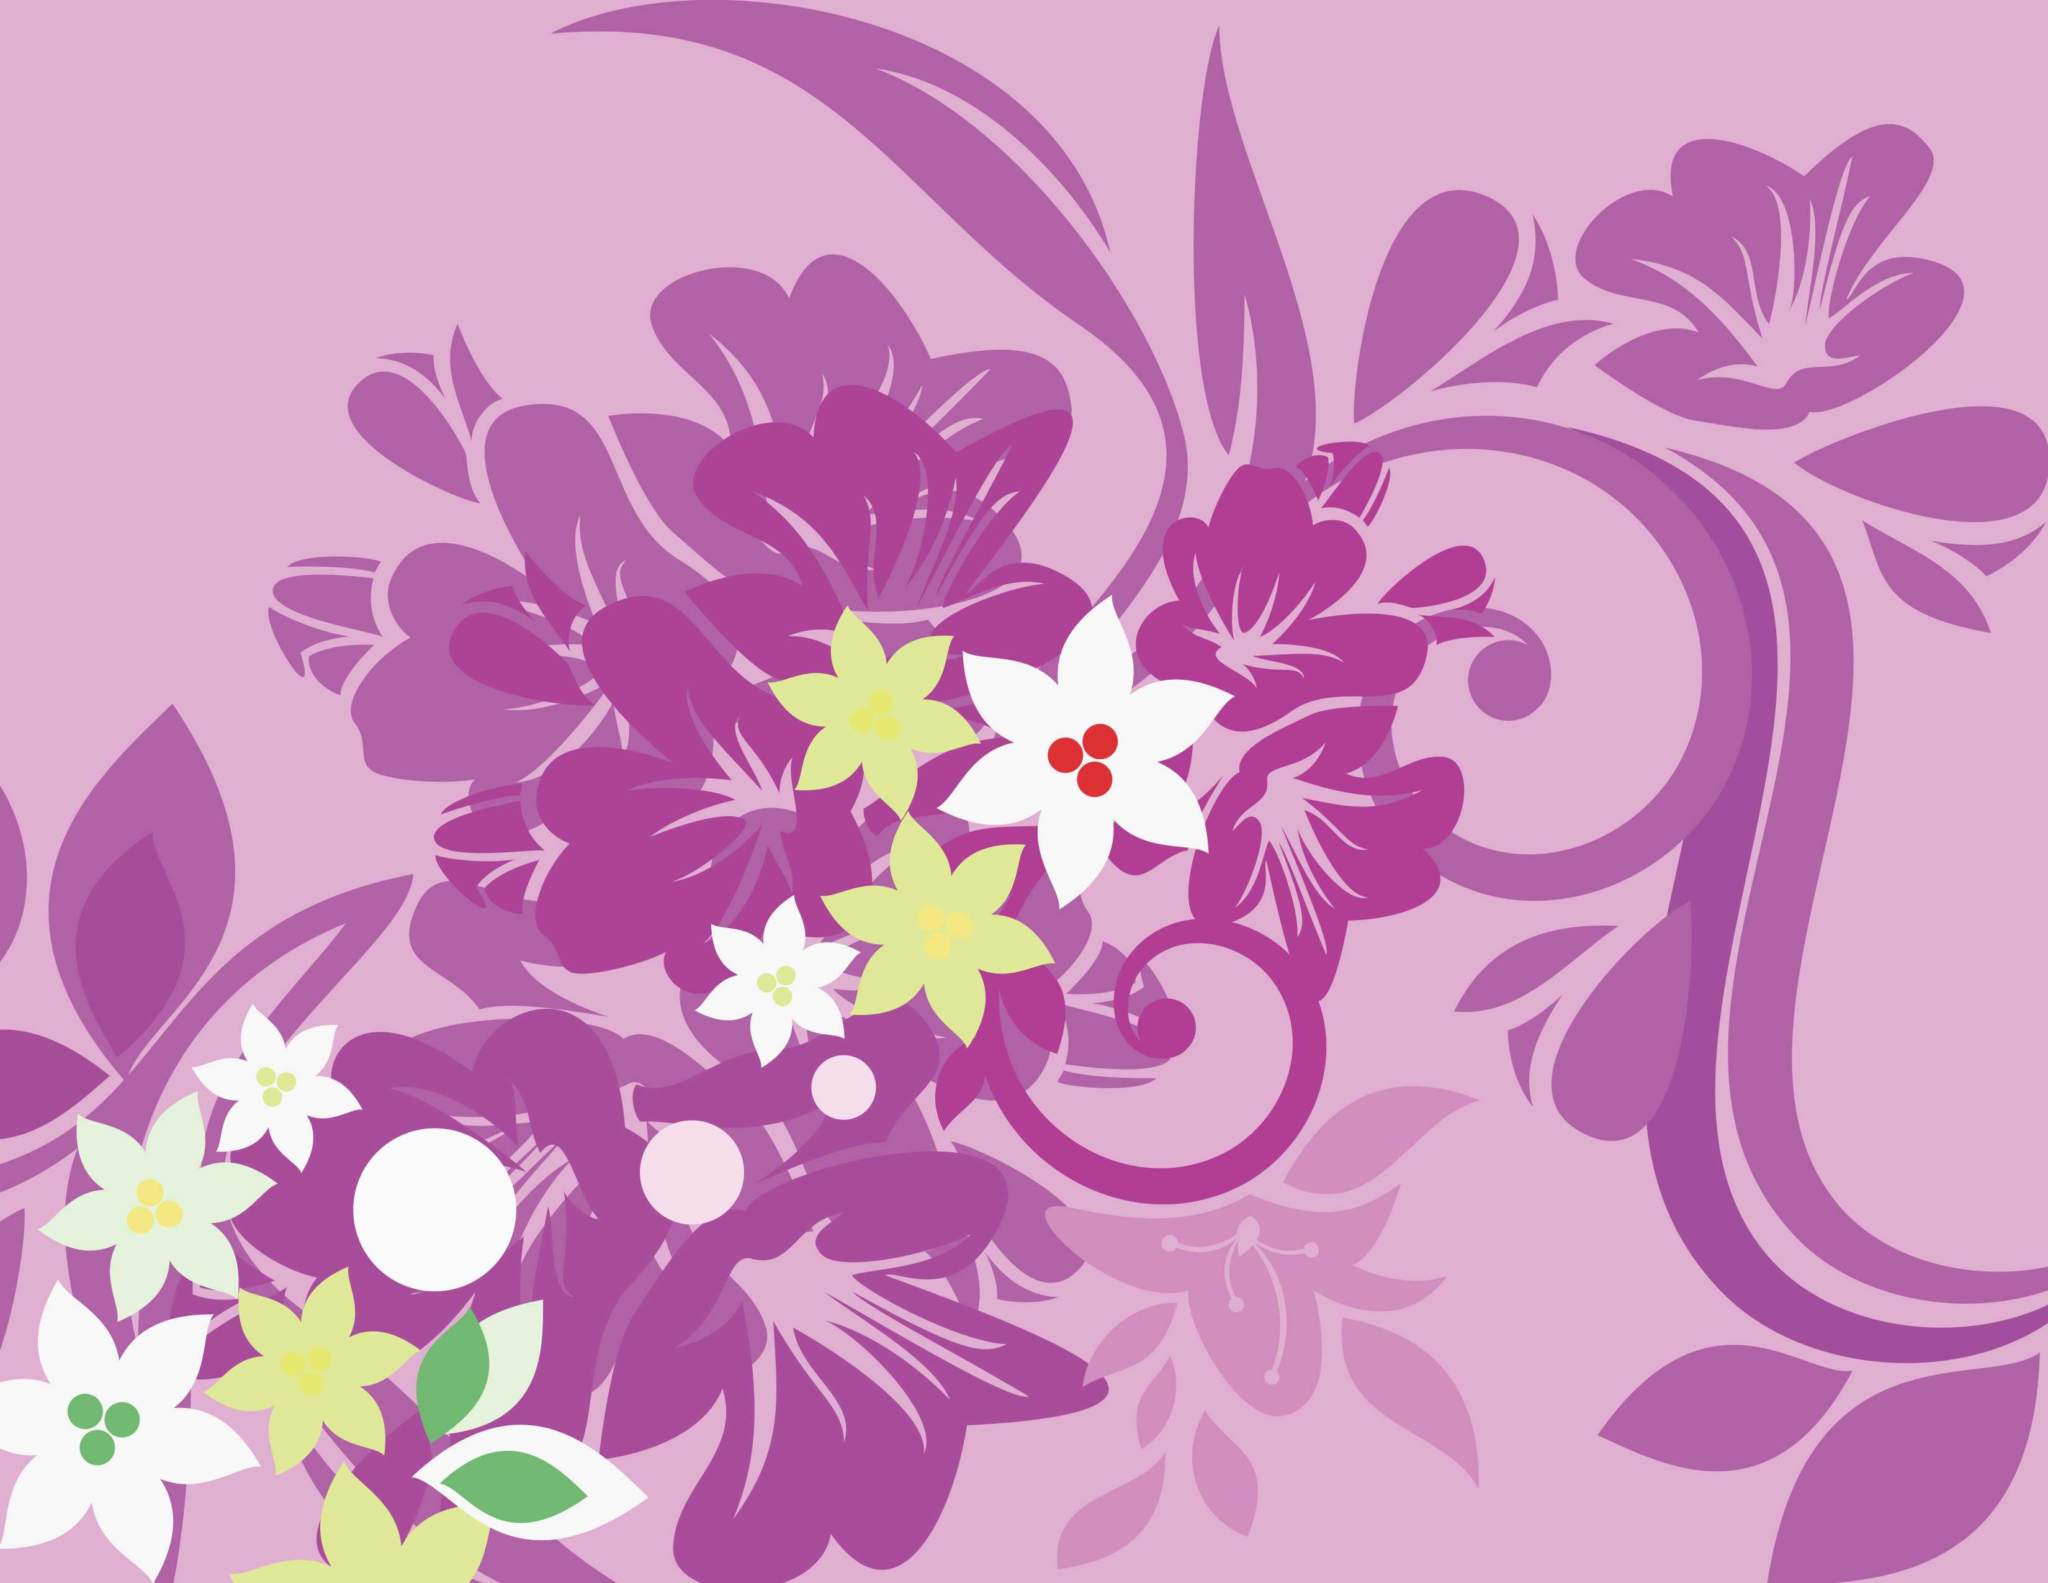 Floral Vector Design Background Pattern CDR File Free Download